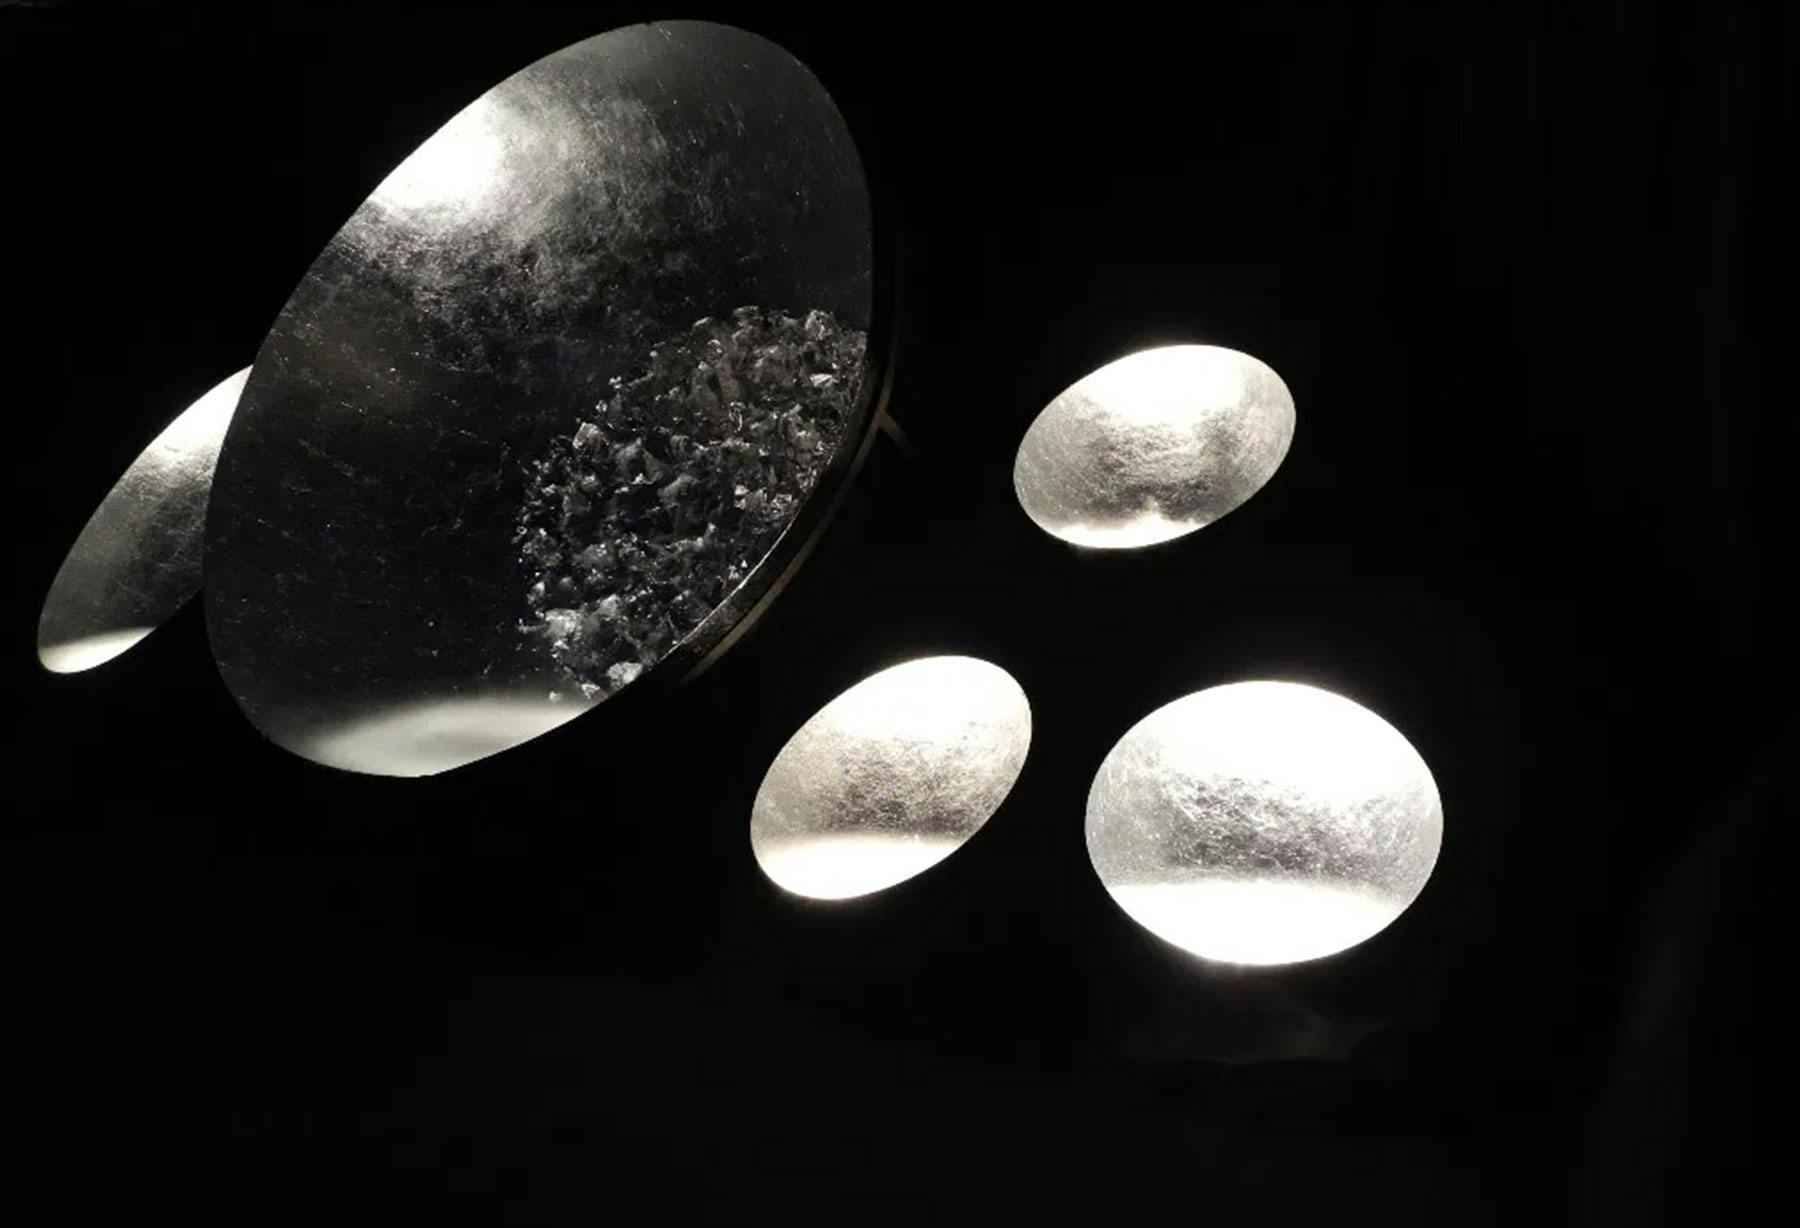 <p>Enzo Catellani è ospite d’onore di Habitat e Jardin a Losanna (Svizzera): riapre le porte della “Casa del Mago”, il nome evocativo dato all’installazione con lampade scenografiche quali “Moon River” e la magica lampada da terra “Luna nel pozzo”.</p>
